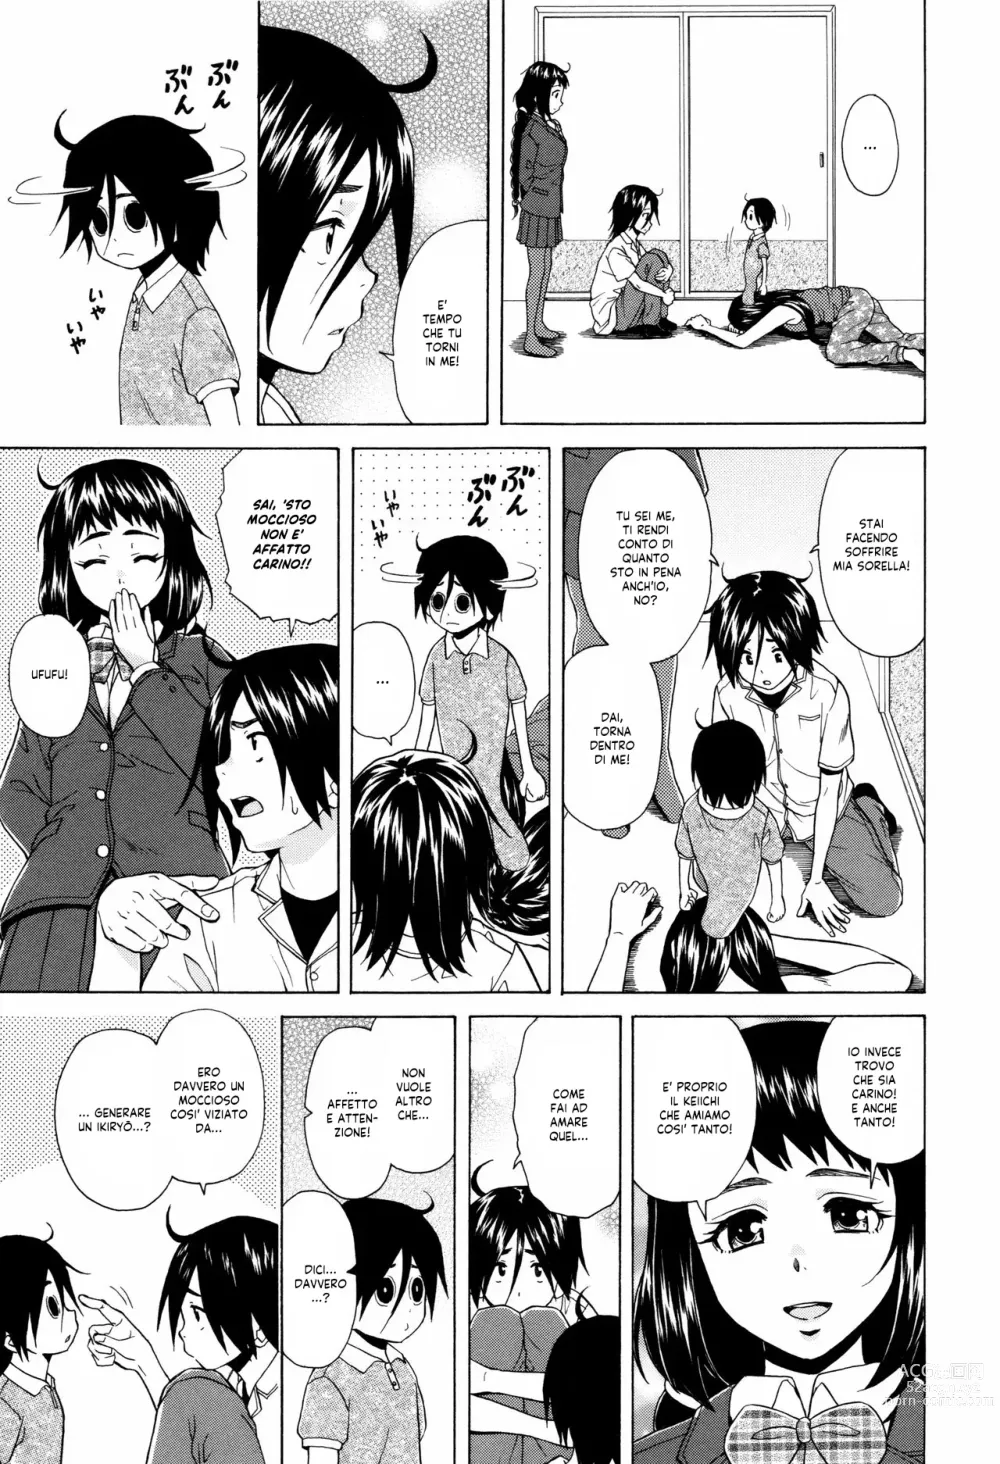 Page 201 of manga Segreti, Suicidi e Sorelle (decensored)